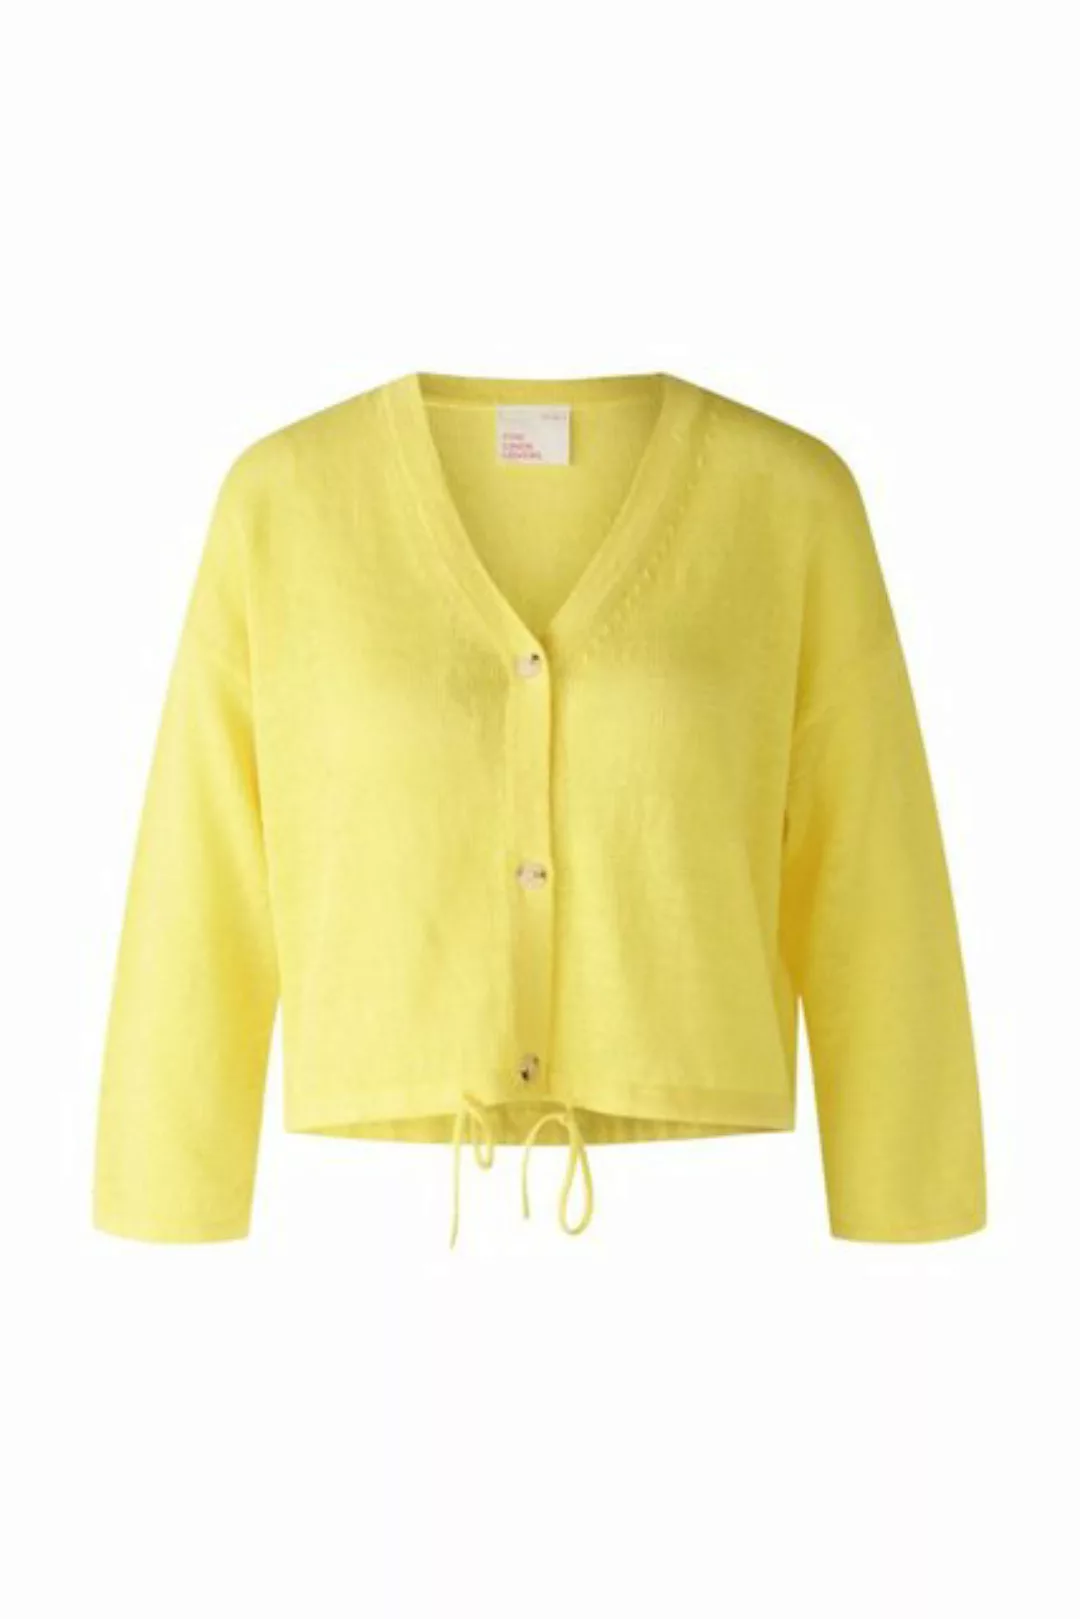 Oui Blusenshirt 87301 yellow günstig online kaufen